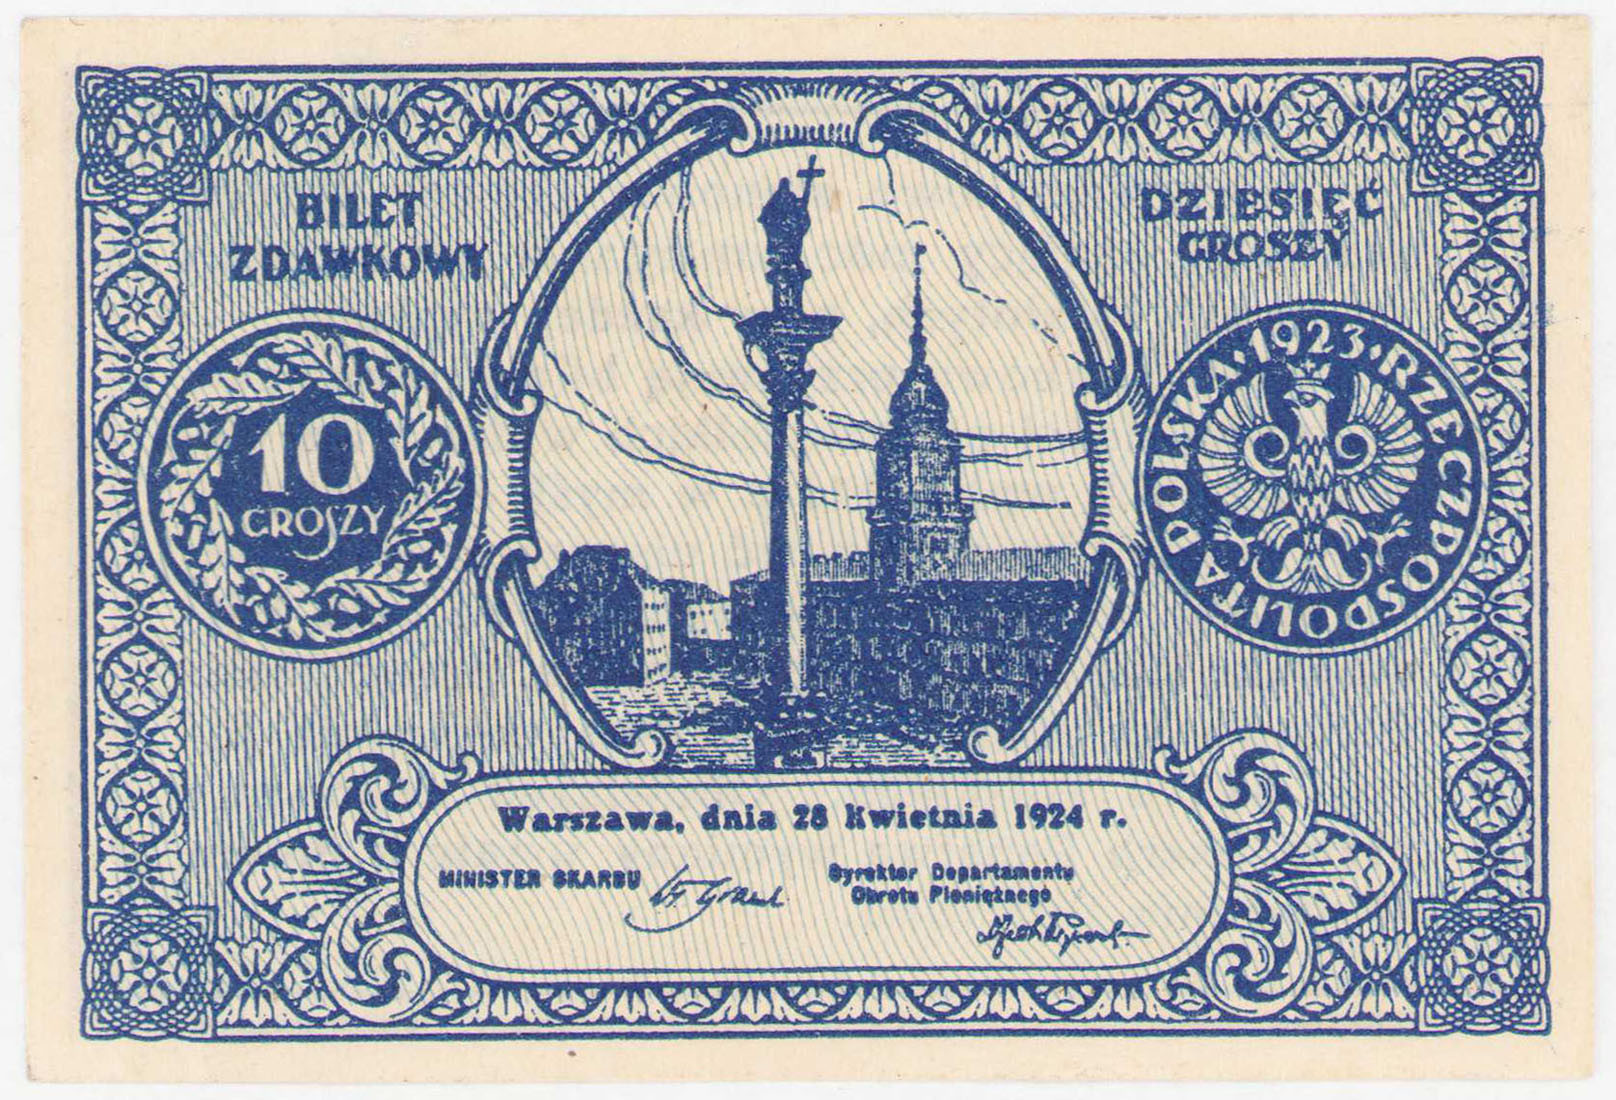 Bilet zdawkowy 10 groszy 1924 – PIĘKNY